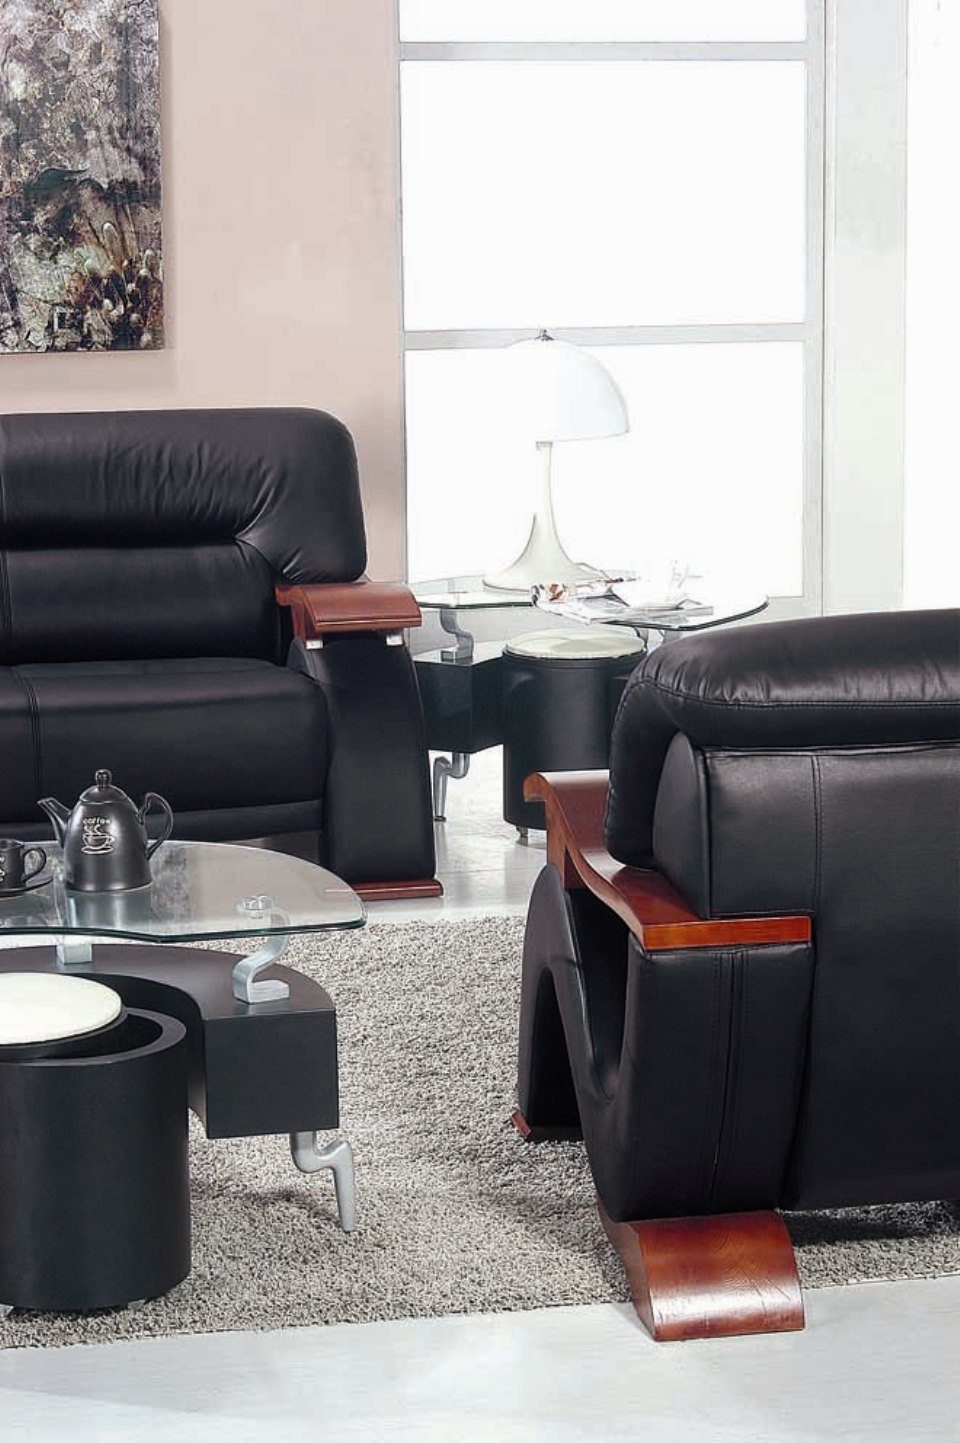 JVmoebel Sofa Couch Polster XXL Leder Couchen 3 Design Sofas Big Sitzer Sitz